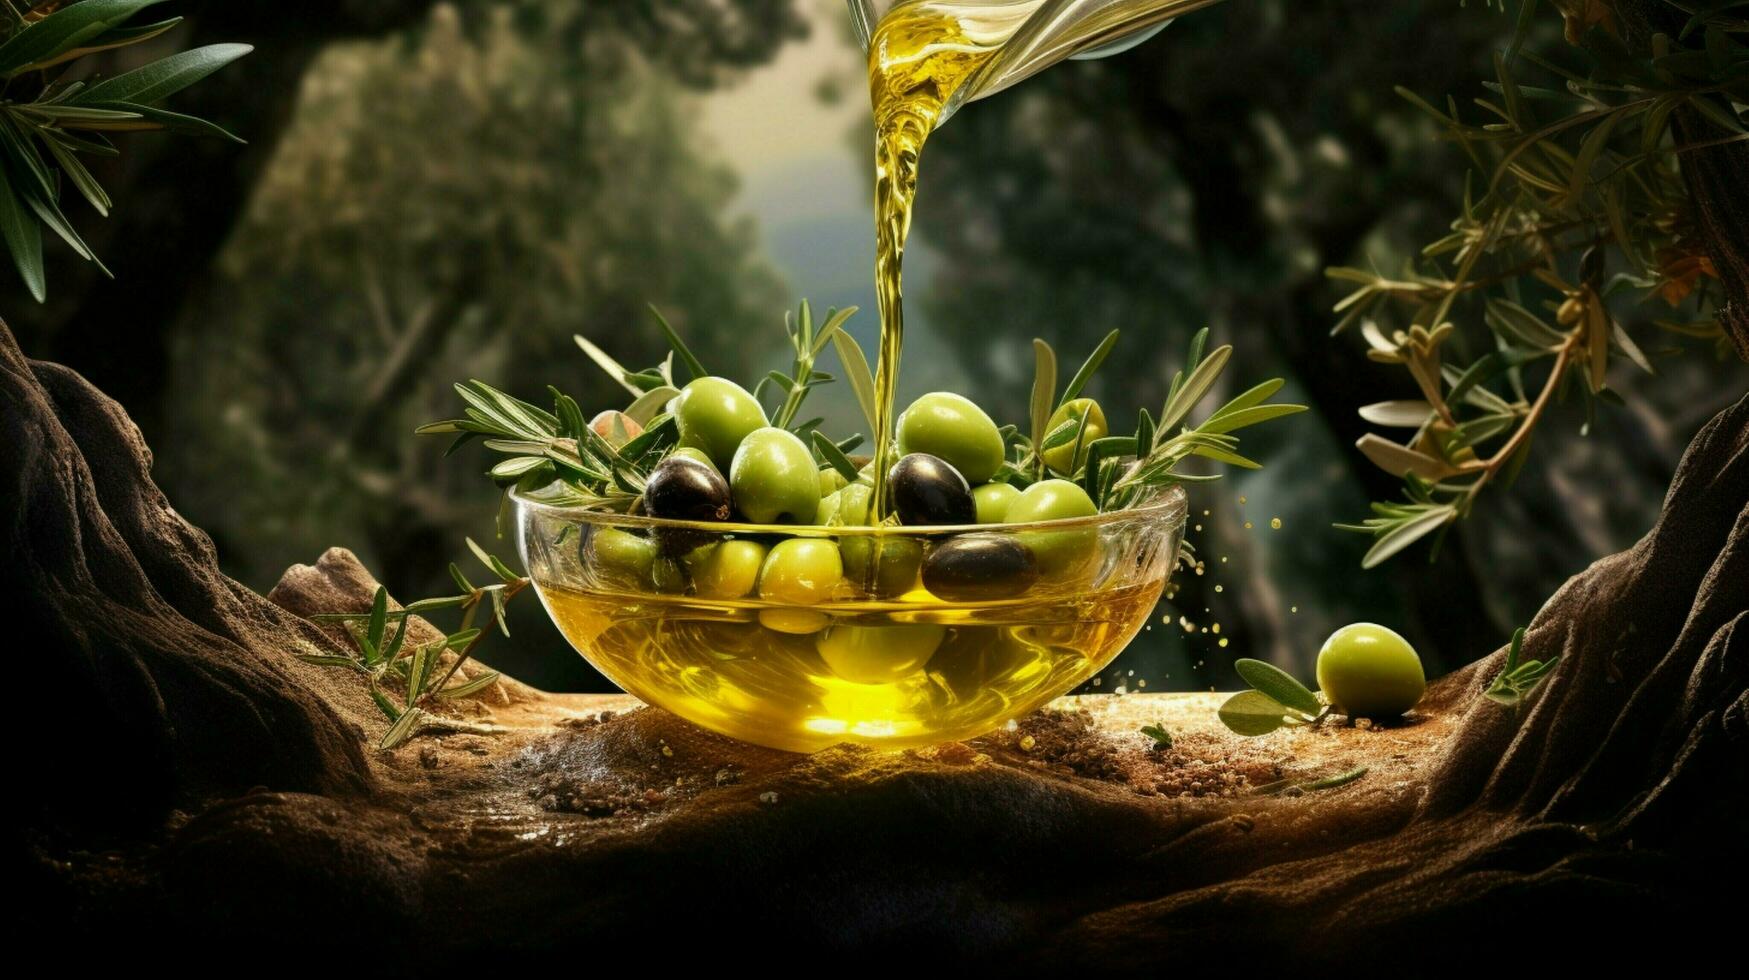 friskhet och natur Häll i in i de skål av organisk oliv foto